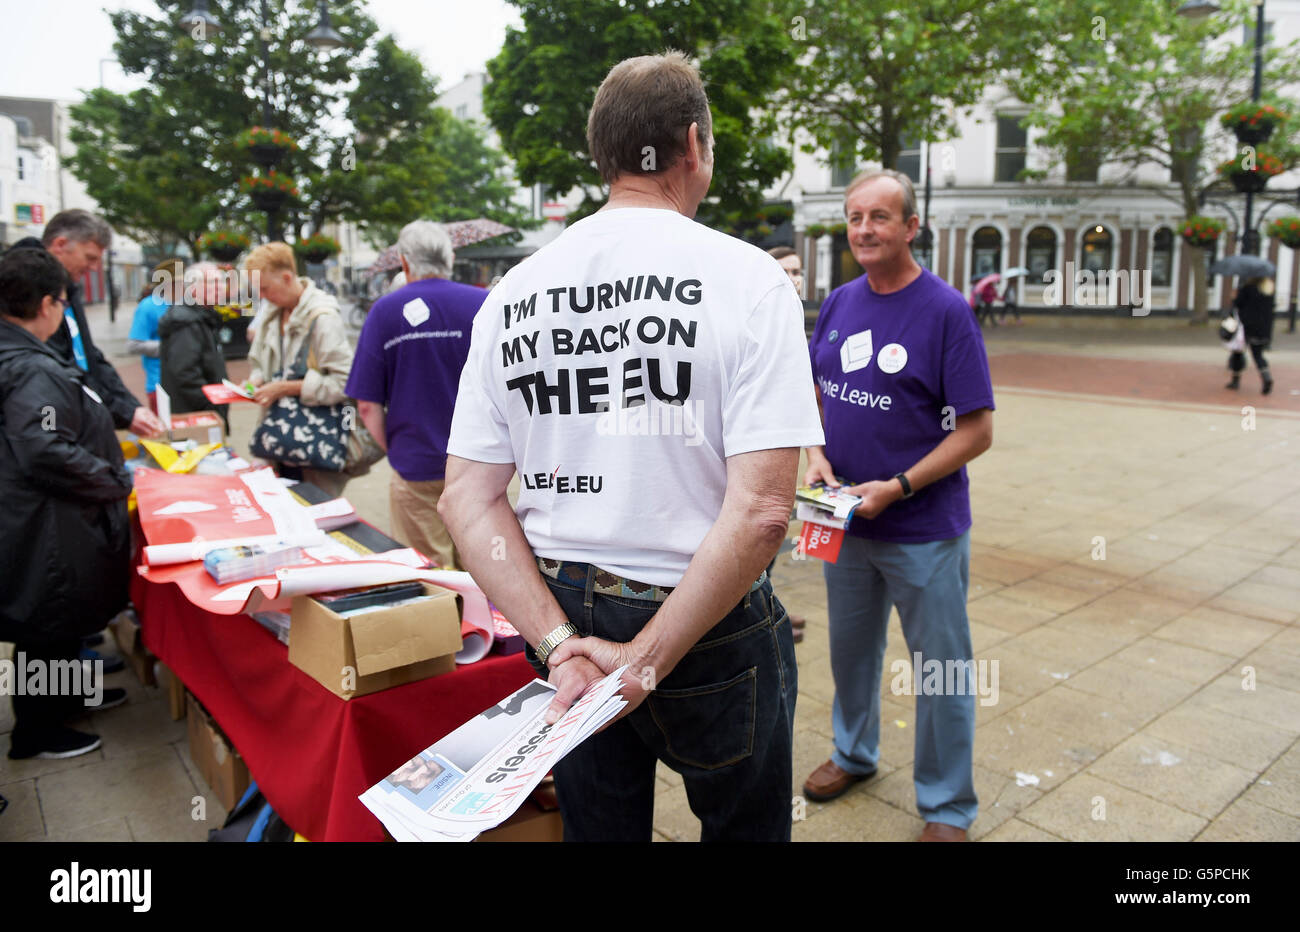 Worthing West Sussex, Regno Unito. Il 22 giugno, 2016. Vote lascia gli attivisti per le strade di Worthing oggi con un giorno di anticipo dell'UE voto referendario in Gran Bretagna Credito: Simon Dack/Alamy Live News Foto Stock